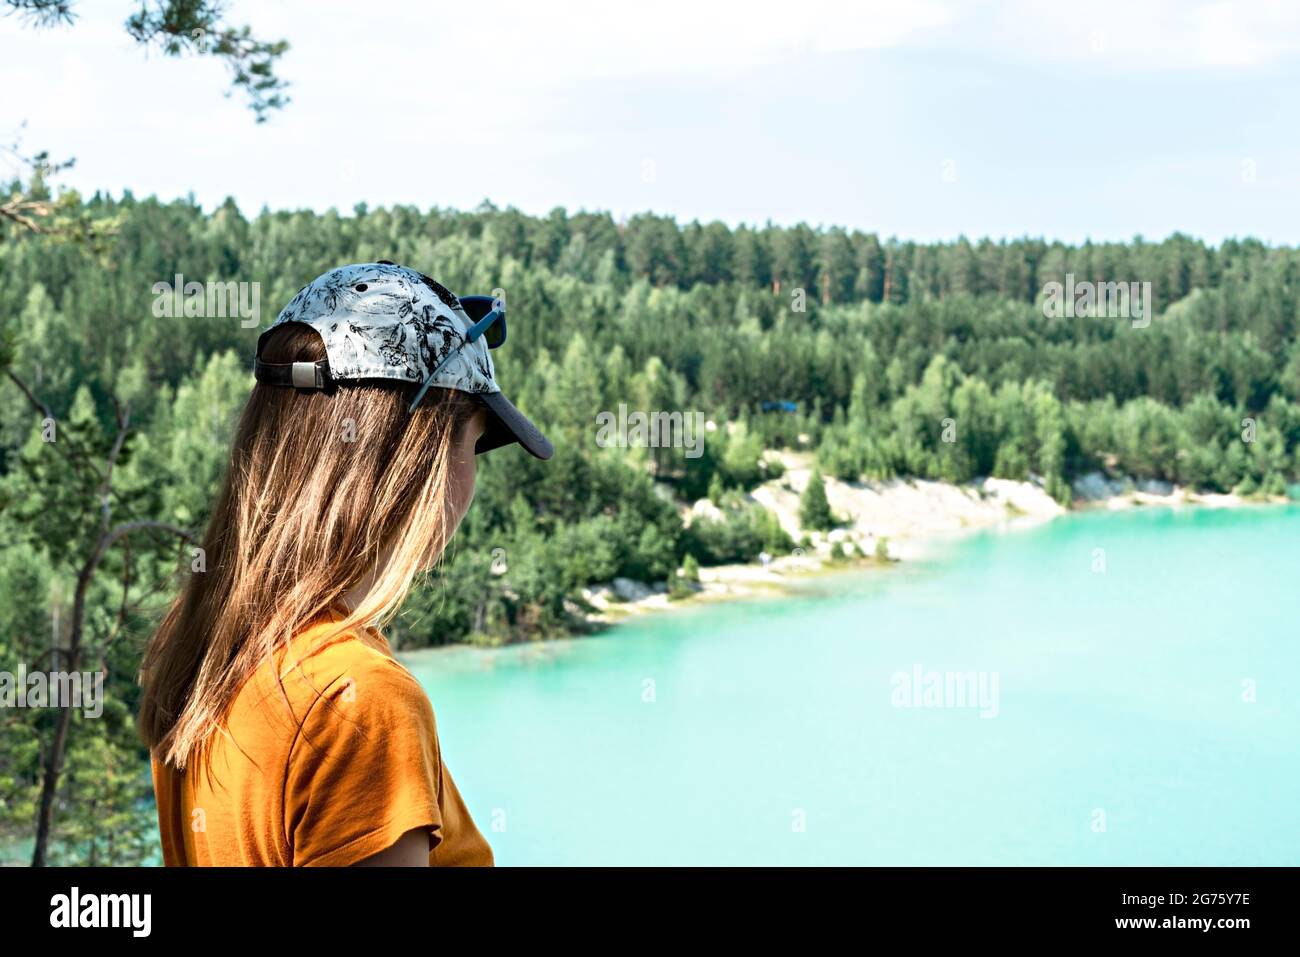 Rückansicht einer jungen blonden Frau, die in einer Mütze und einem Senf-T-Shirt auf der Klippe eines blau-türkisfarbenen Sees oder Flusses und eines Nadelwaldes steht, tr Stockfoto